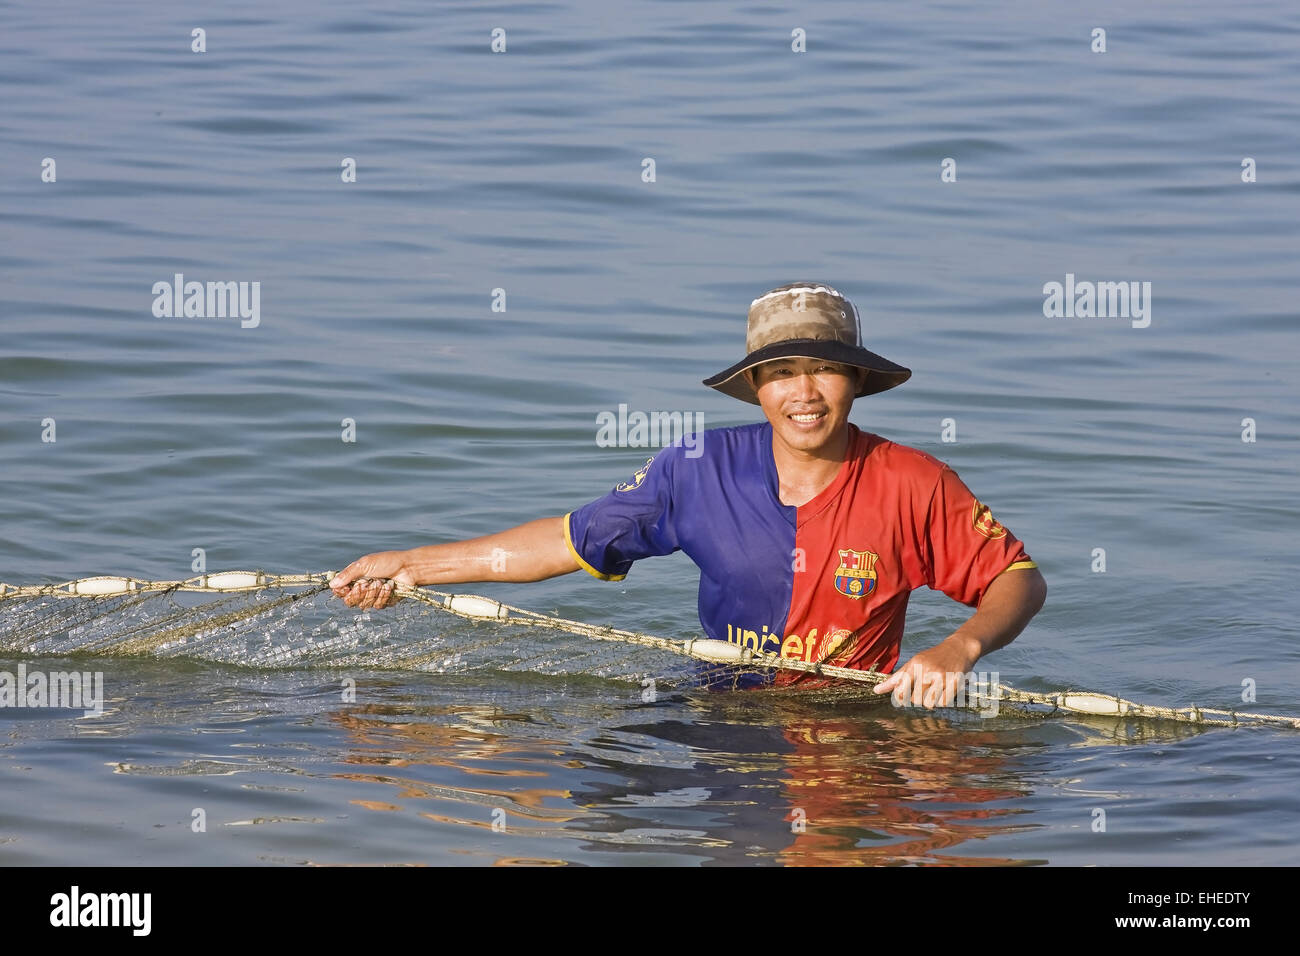 fishermen in vietnam Stock Photo